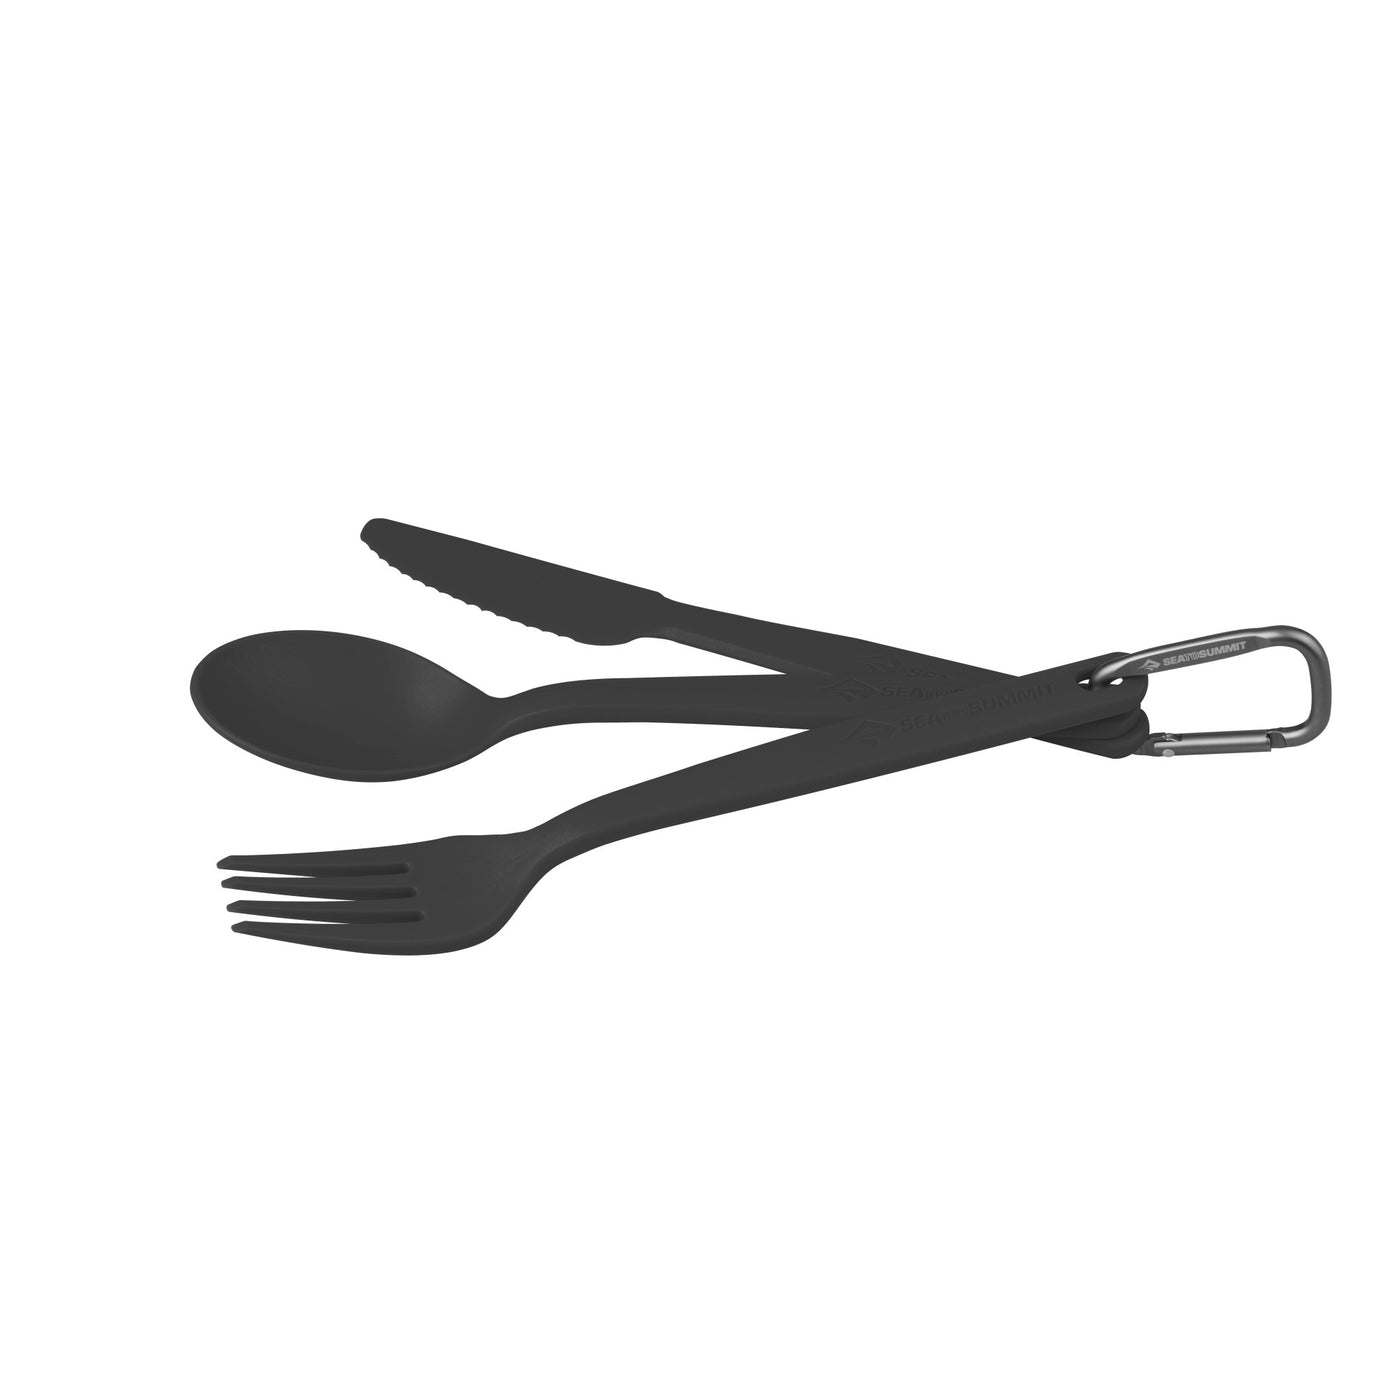 Camp Cutlery Set - [3 Piece]